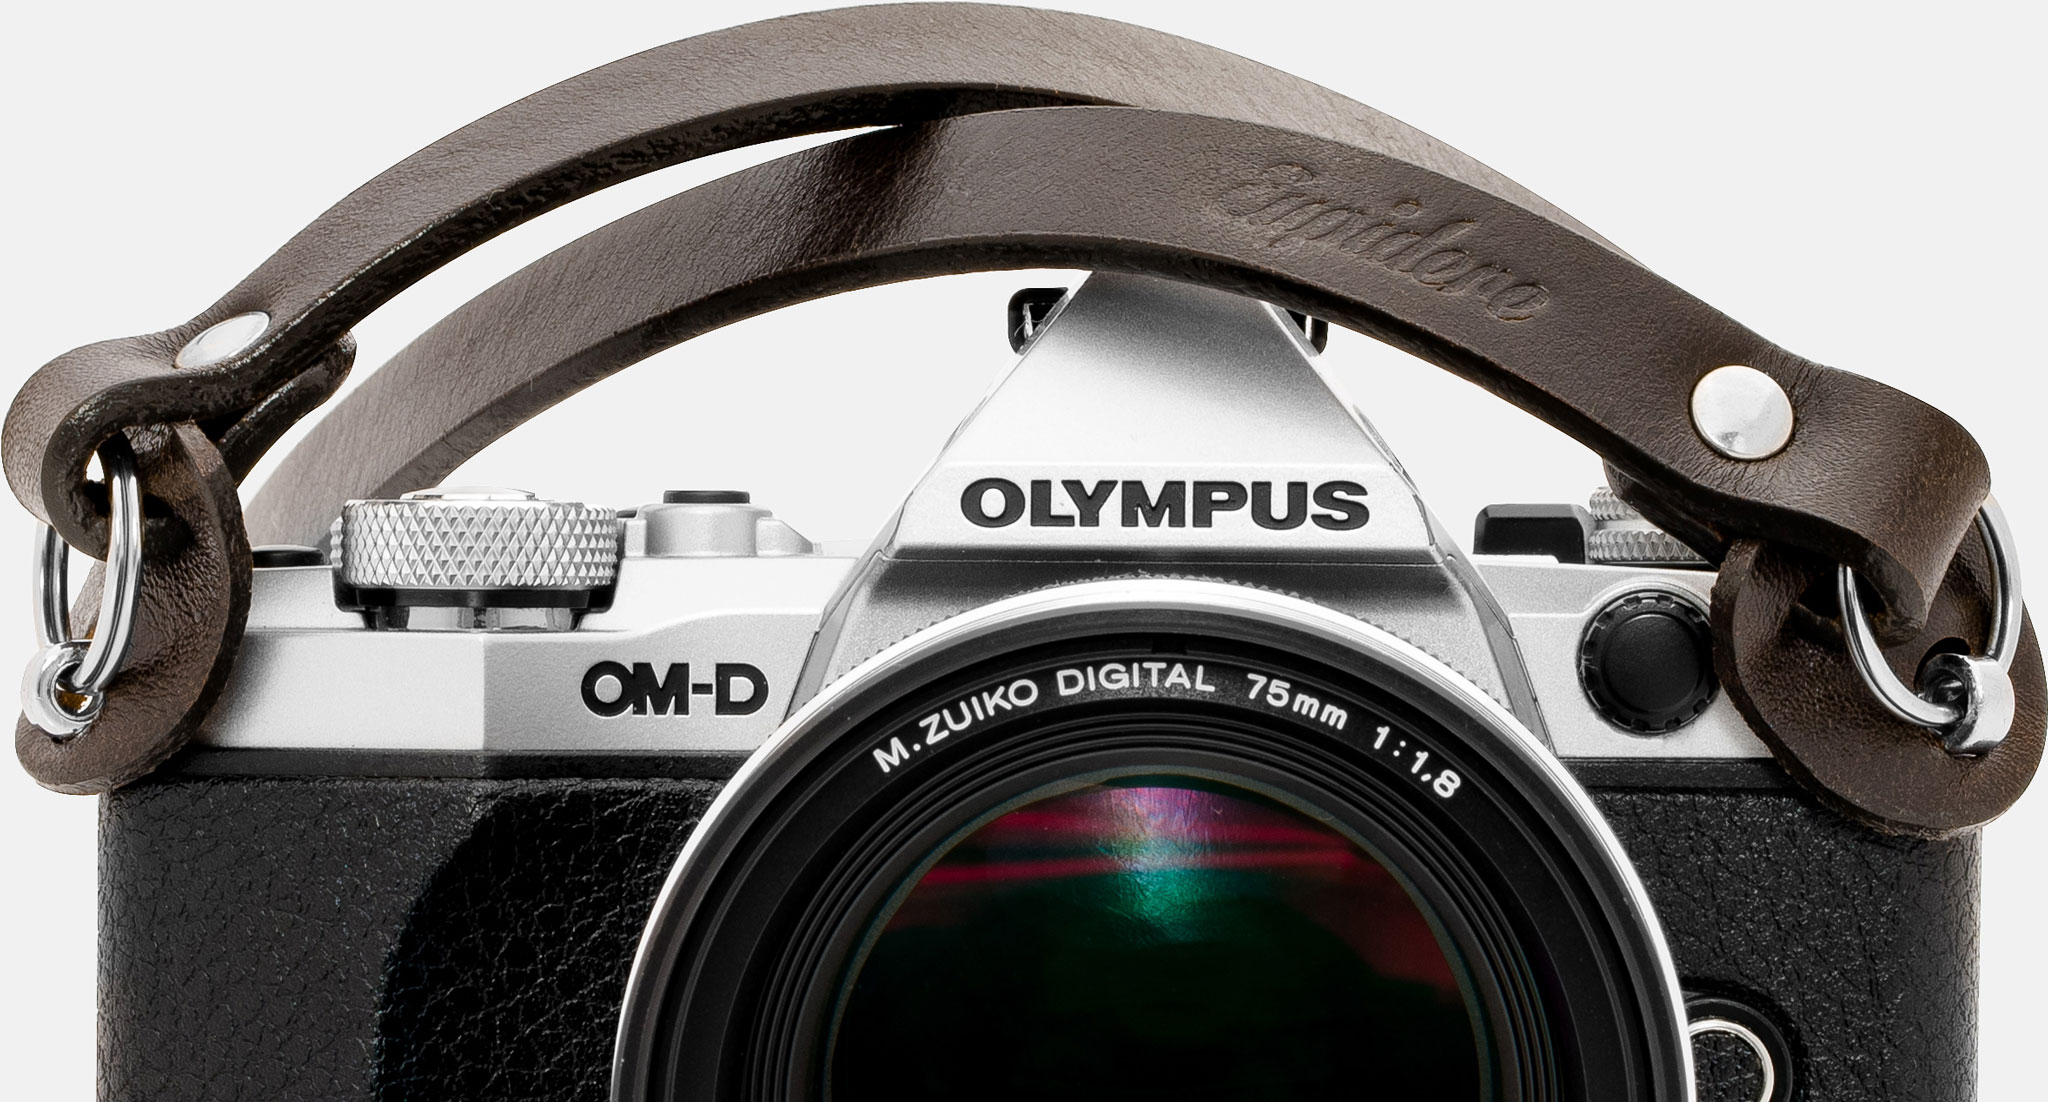 Skórzany pasek do aparatu, prezent dla fotografa, Olympus